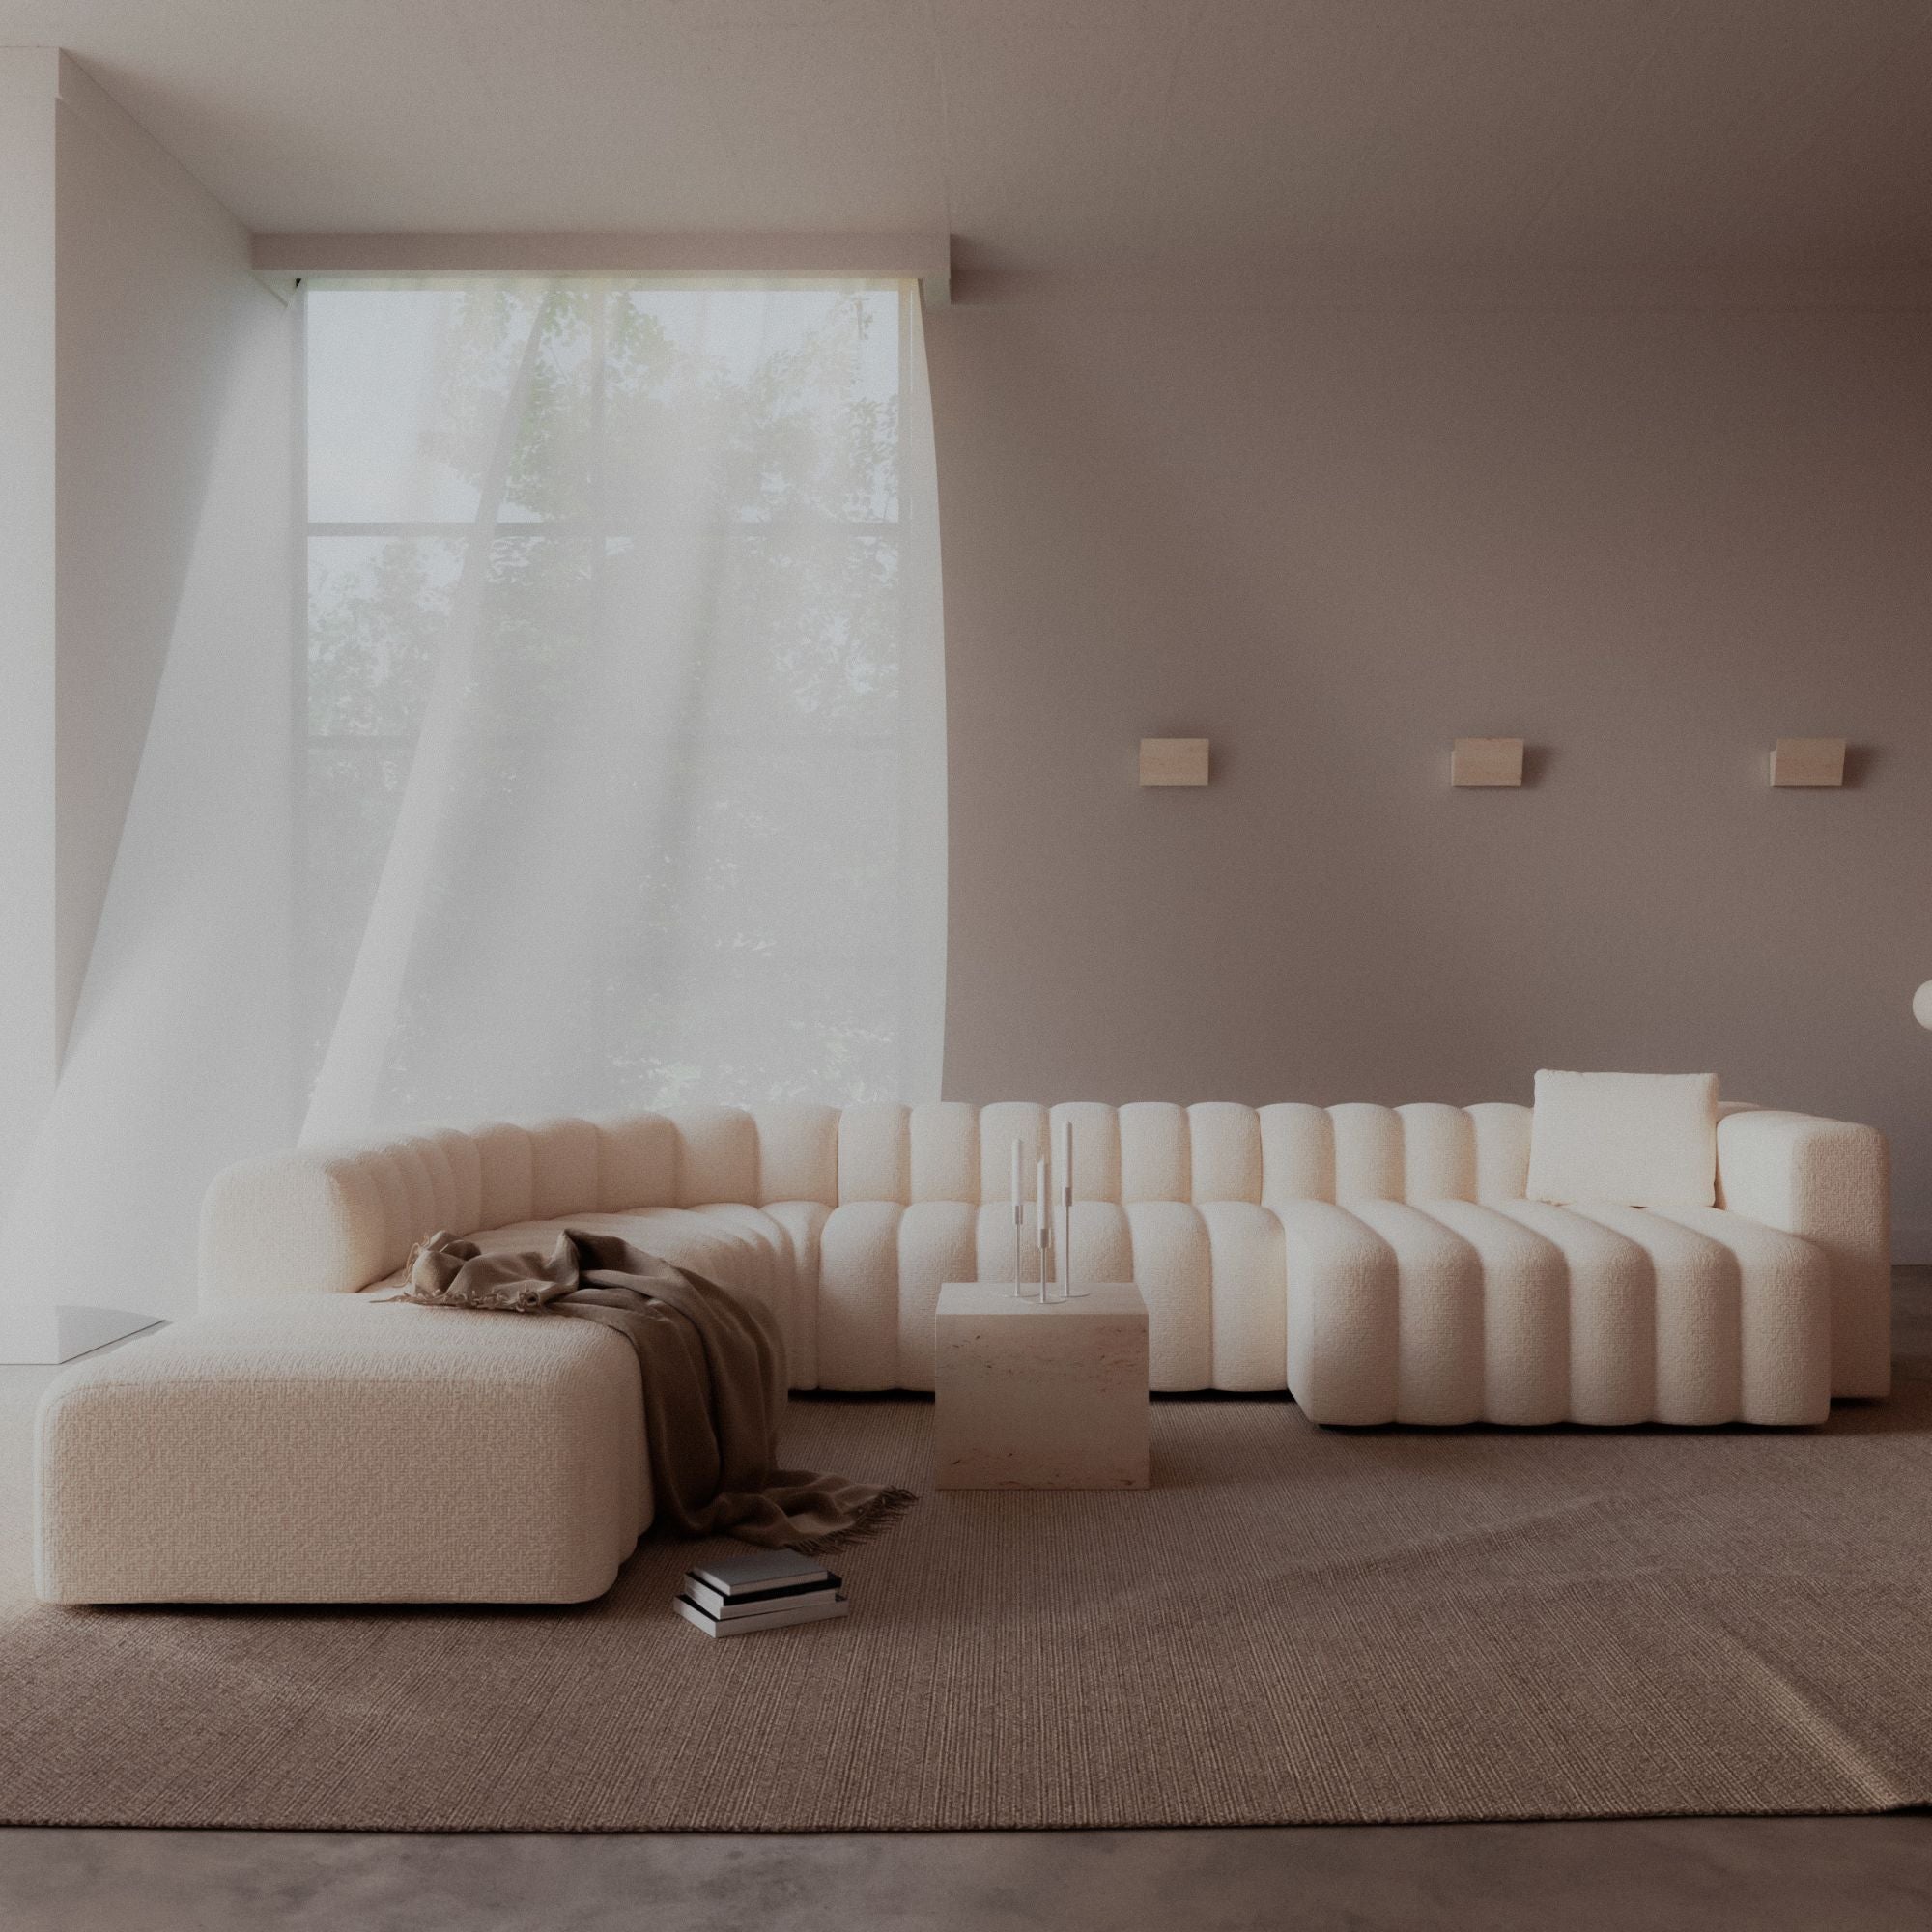 Studio 10 Sofa - THAT COOL LIVING